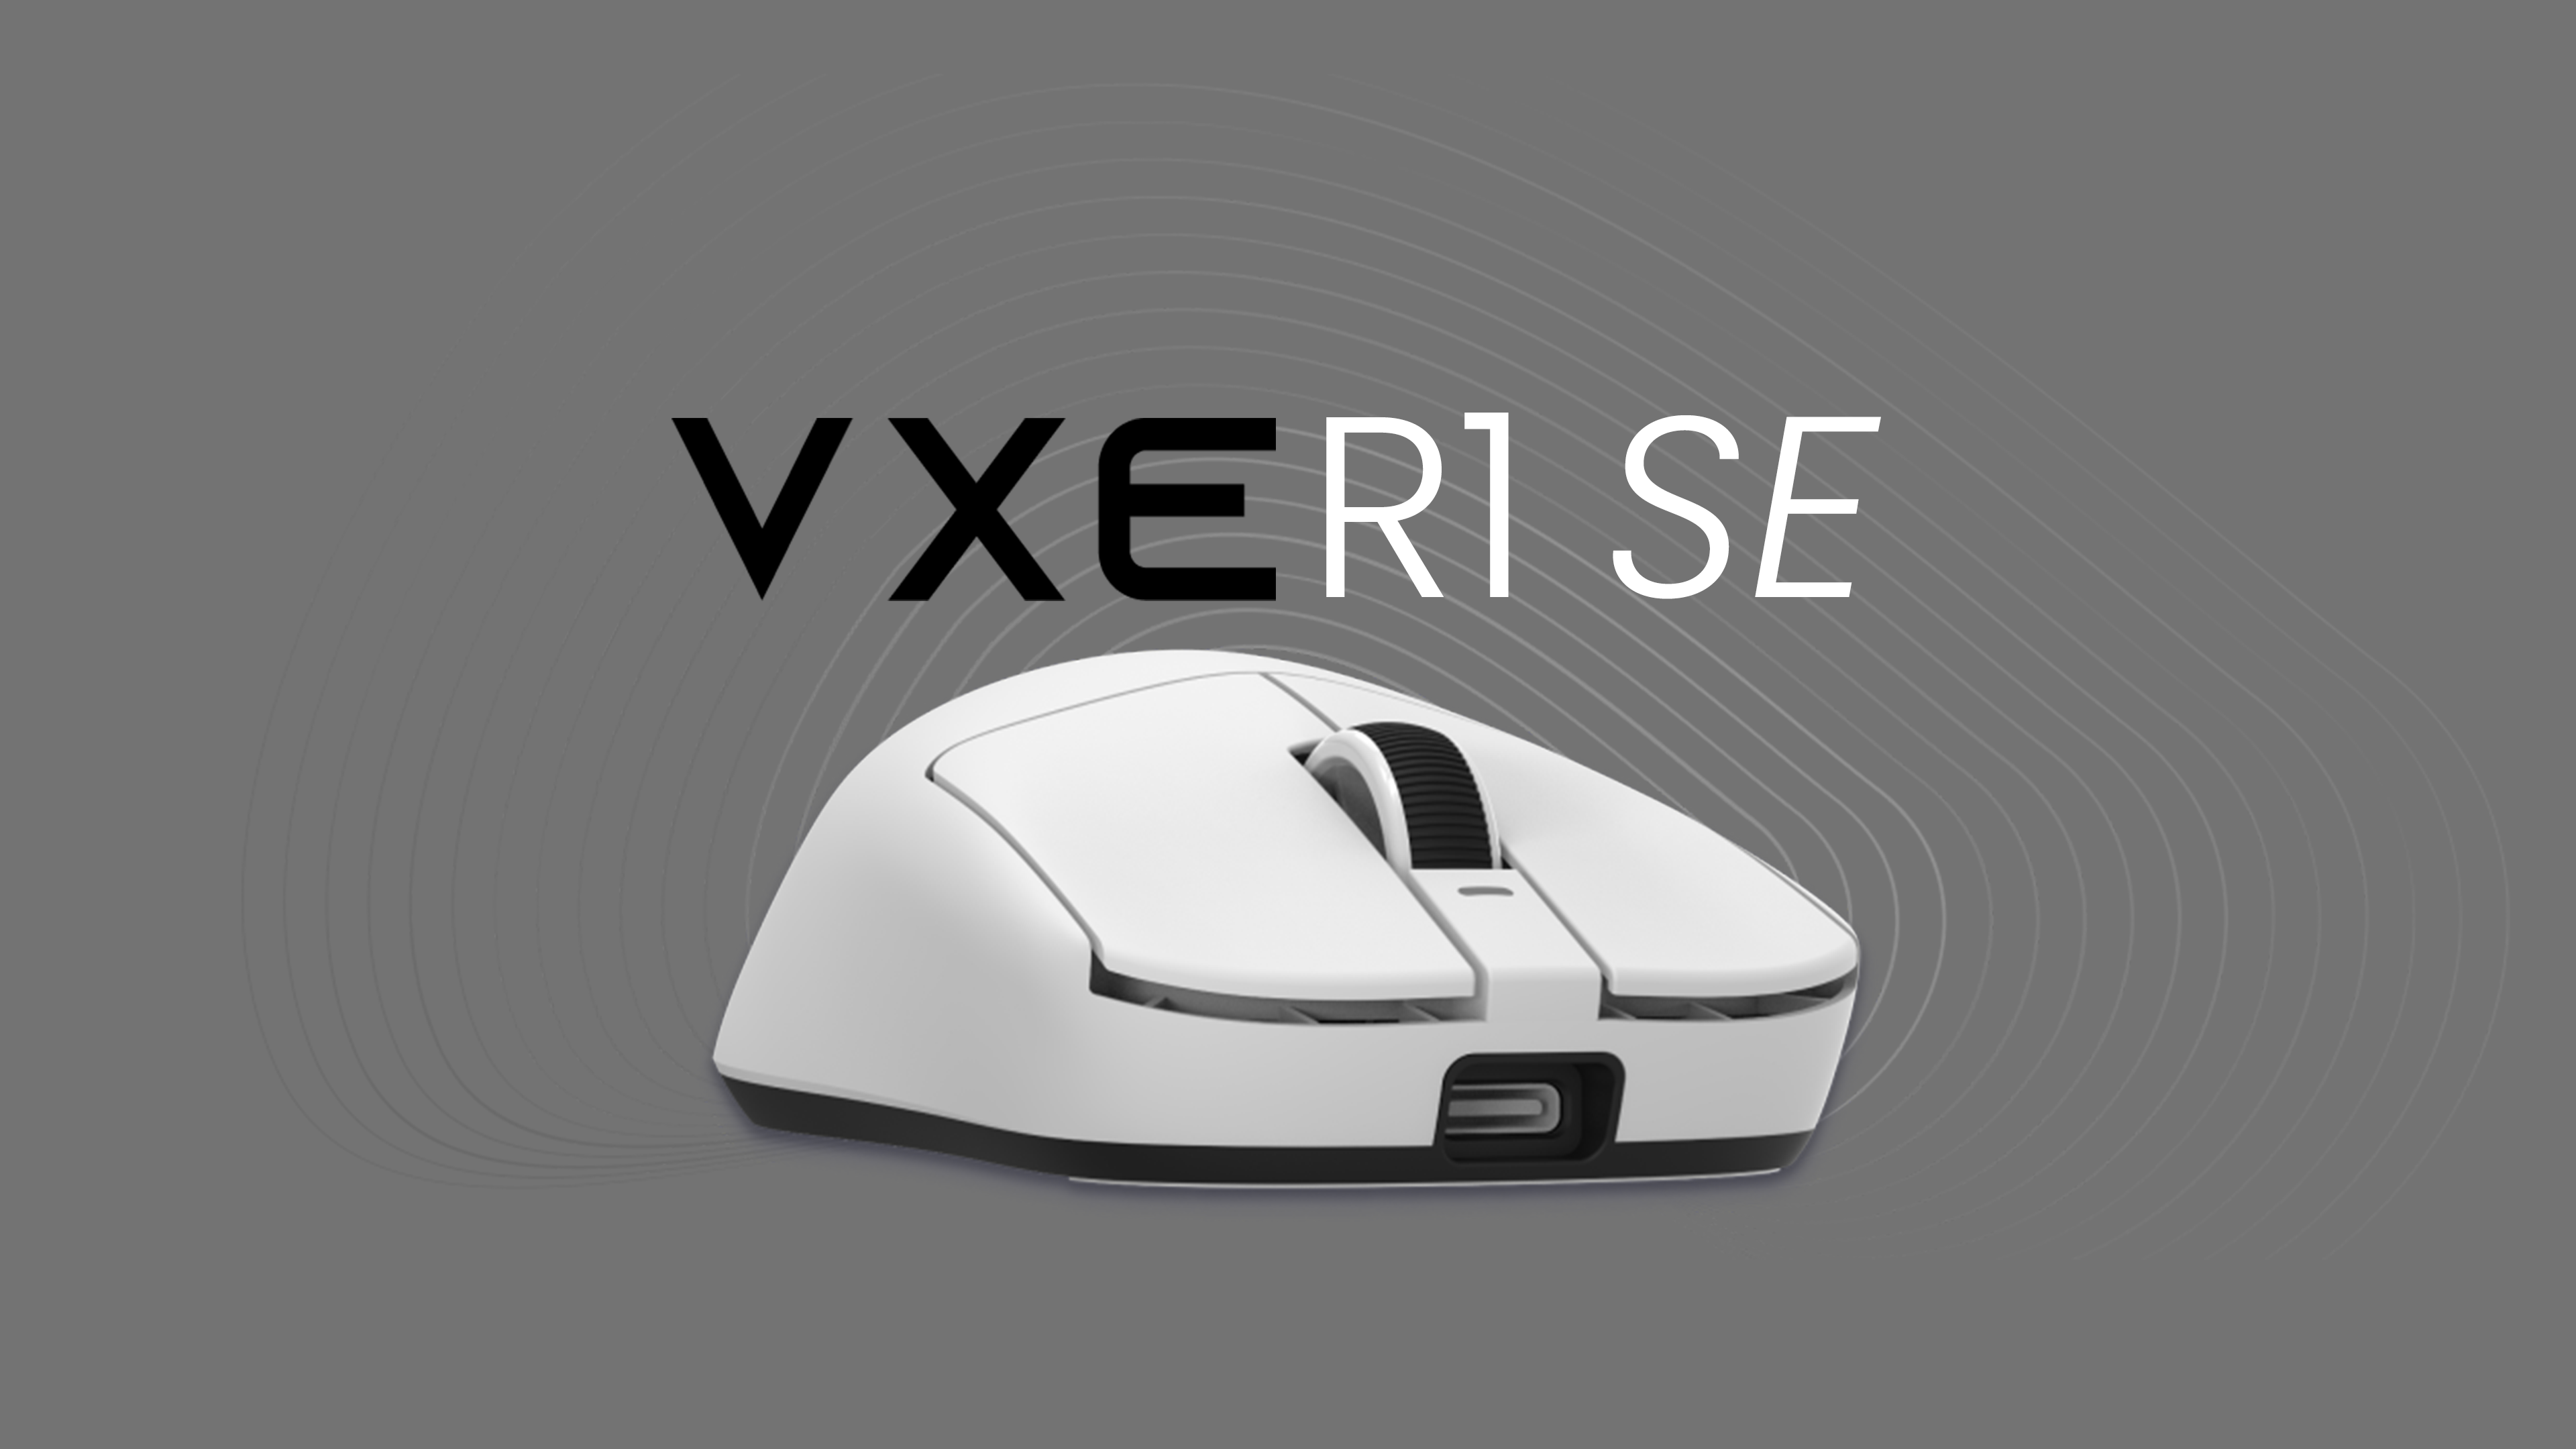 VXE R1SE belépőszintű játékhoz is használható egér